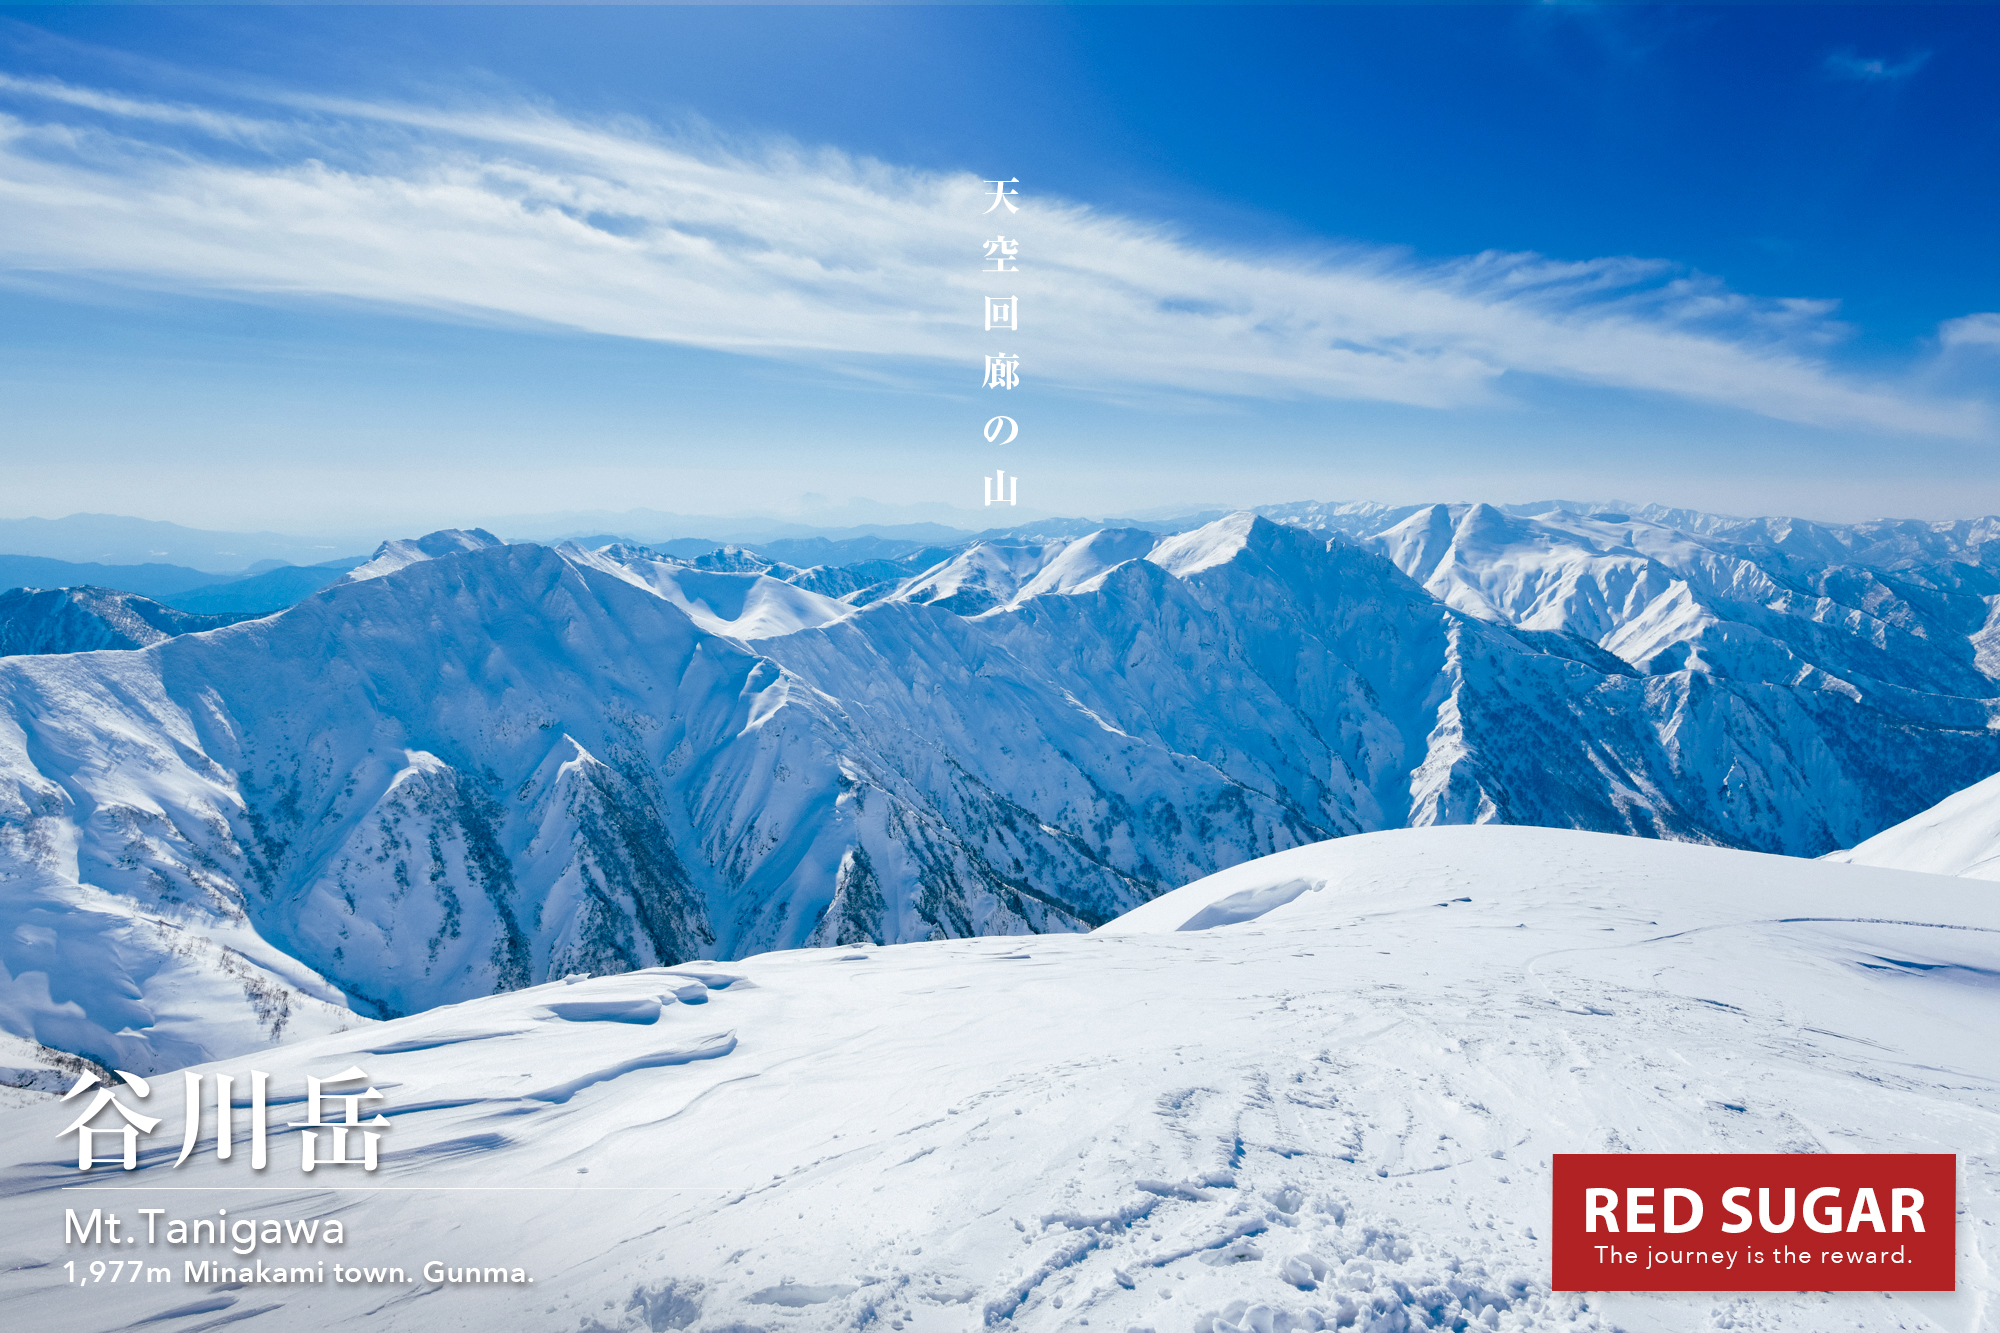 上信越 谷川岳 厳冬の一ノ倉岳を目指す 圧倒的積雪の白き銀世界の先へ Red Sugar